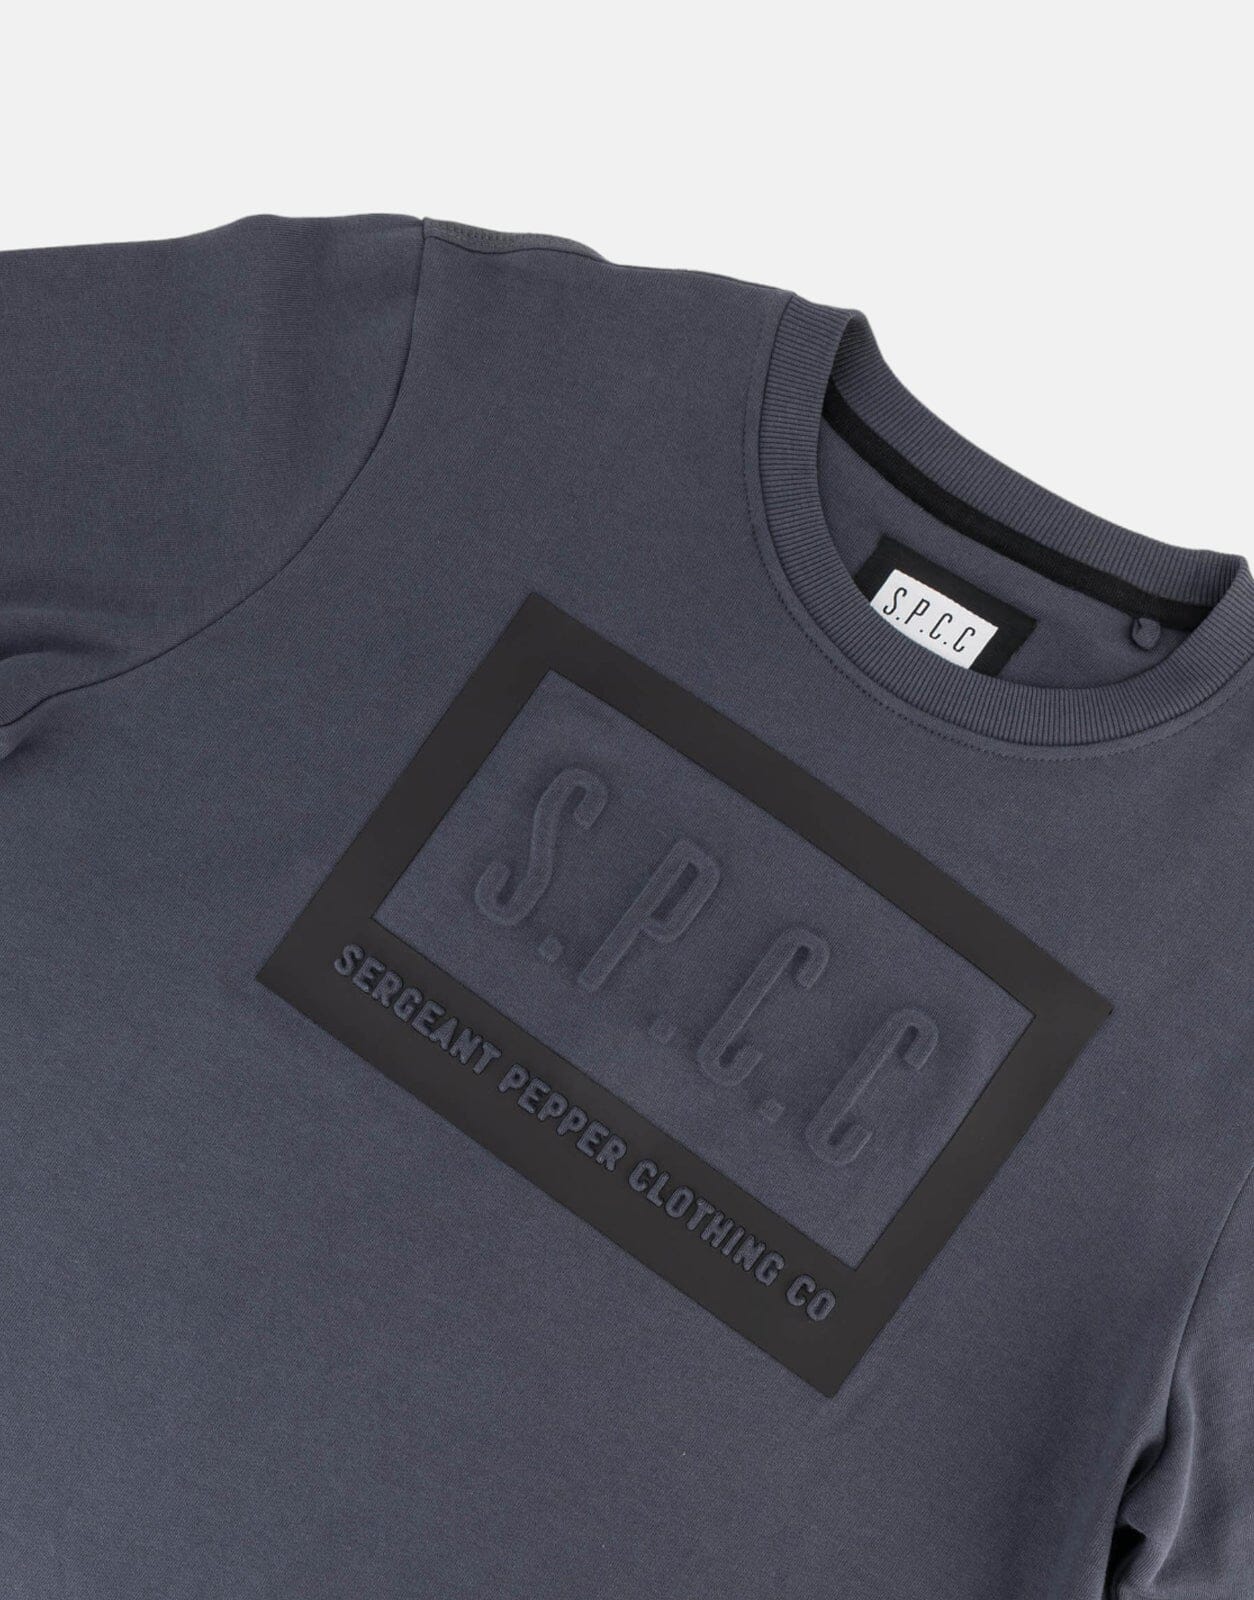 SPCC Strohm Dark Grey Sweatshirt - Subwear